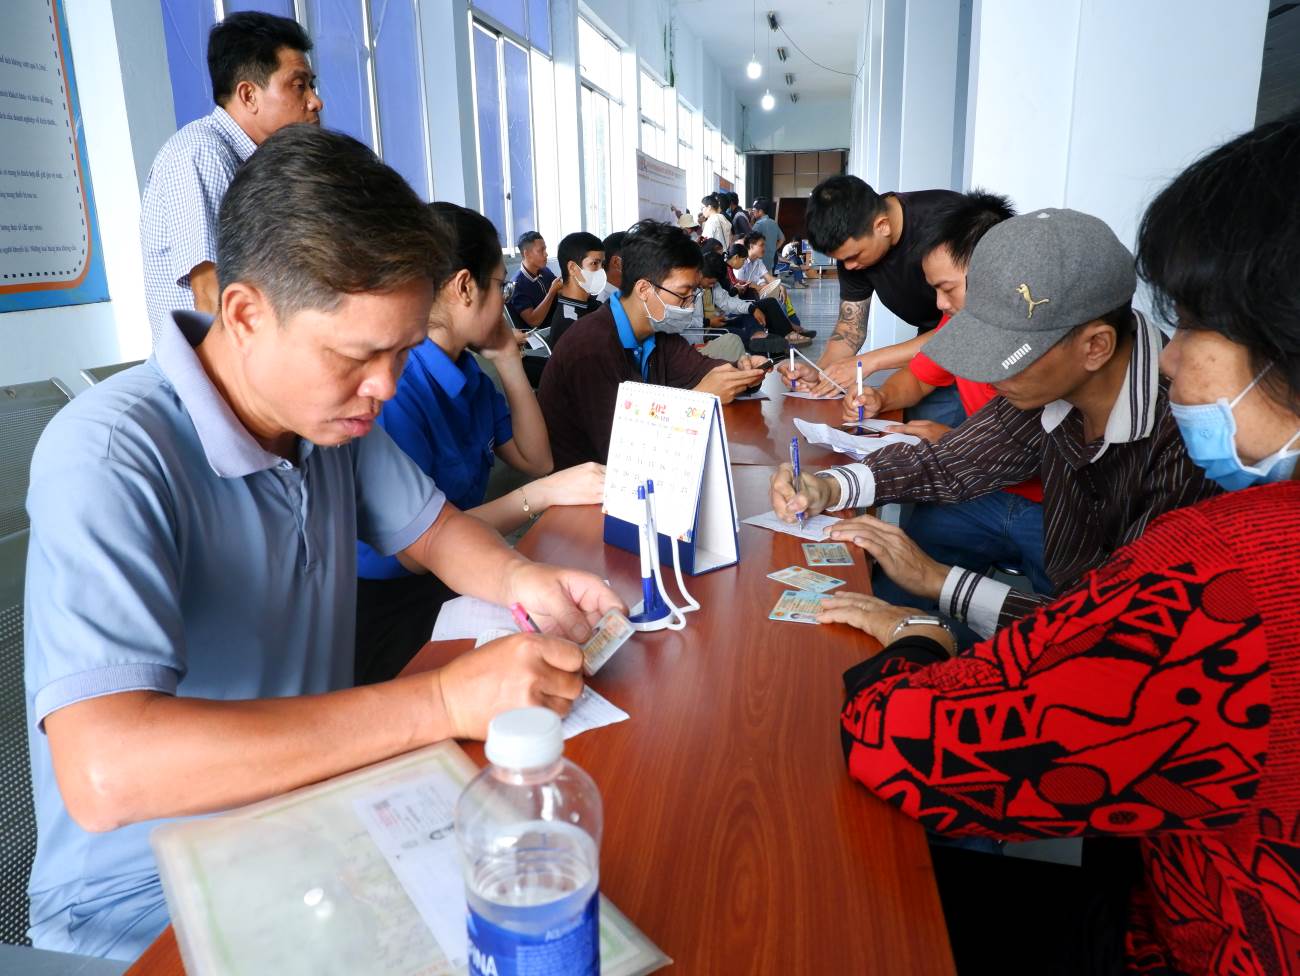 Năm nay ga Sài Gòn đã chuẩn bị sẵn các phiếu để khách hàng điền thông tin trước khi đến quầy mua vé. Đồng thời, lực lượng hướng dẫn khách hàng, thanh niên tình nguyện và an ninh trật tự được bố trí đầy đủ để hỗ trợ khách hàng.